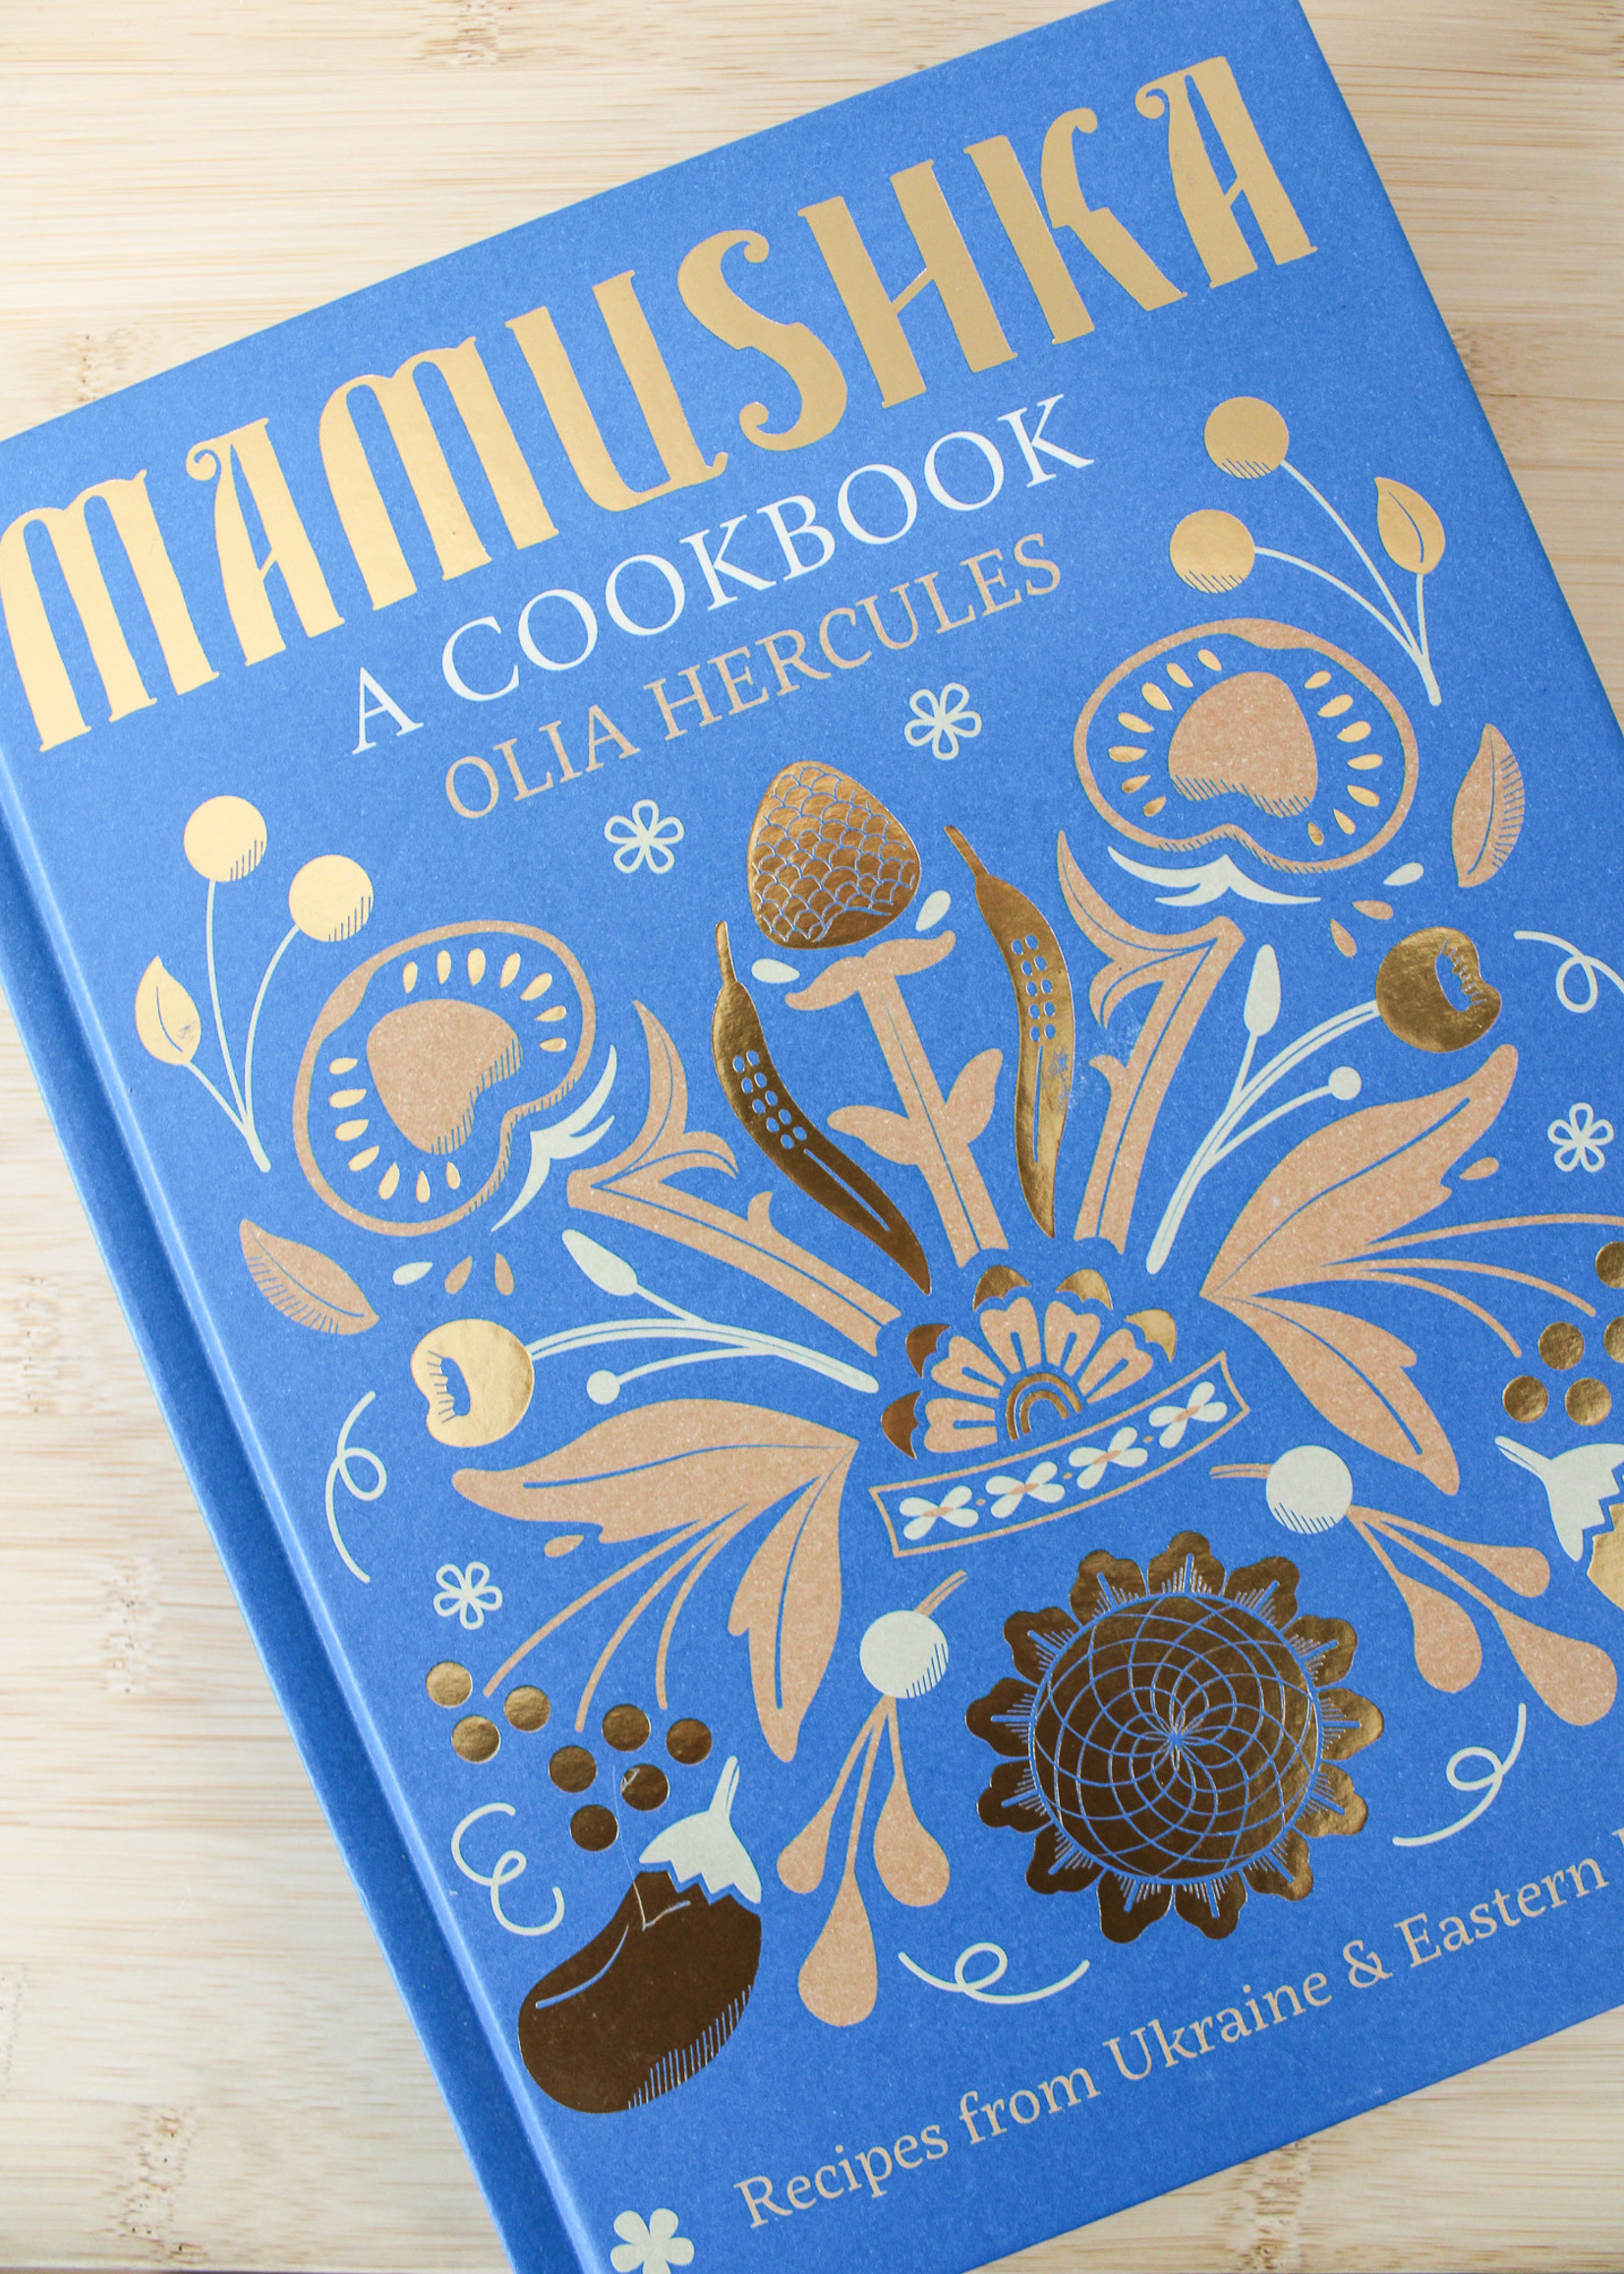 BOOK -  Mamushka by Olia Hercules,  a Cookbook